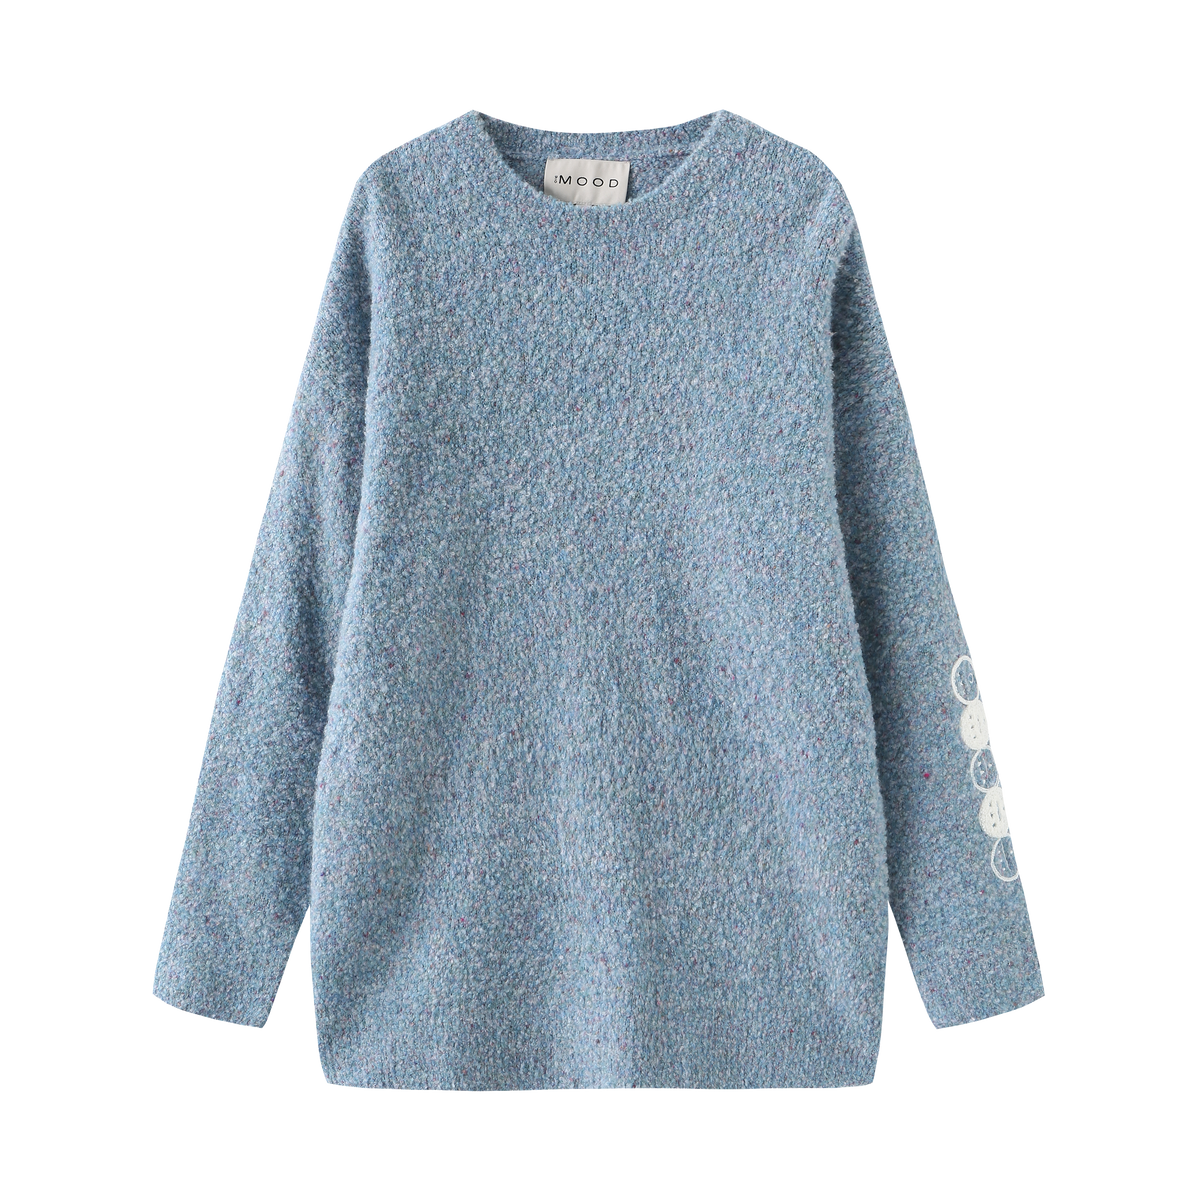 ICON 3moji Sweater _ Blue